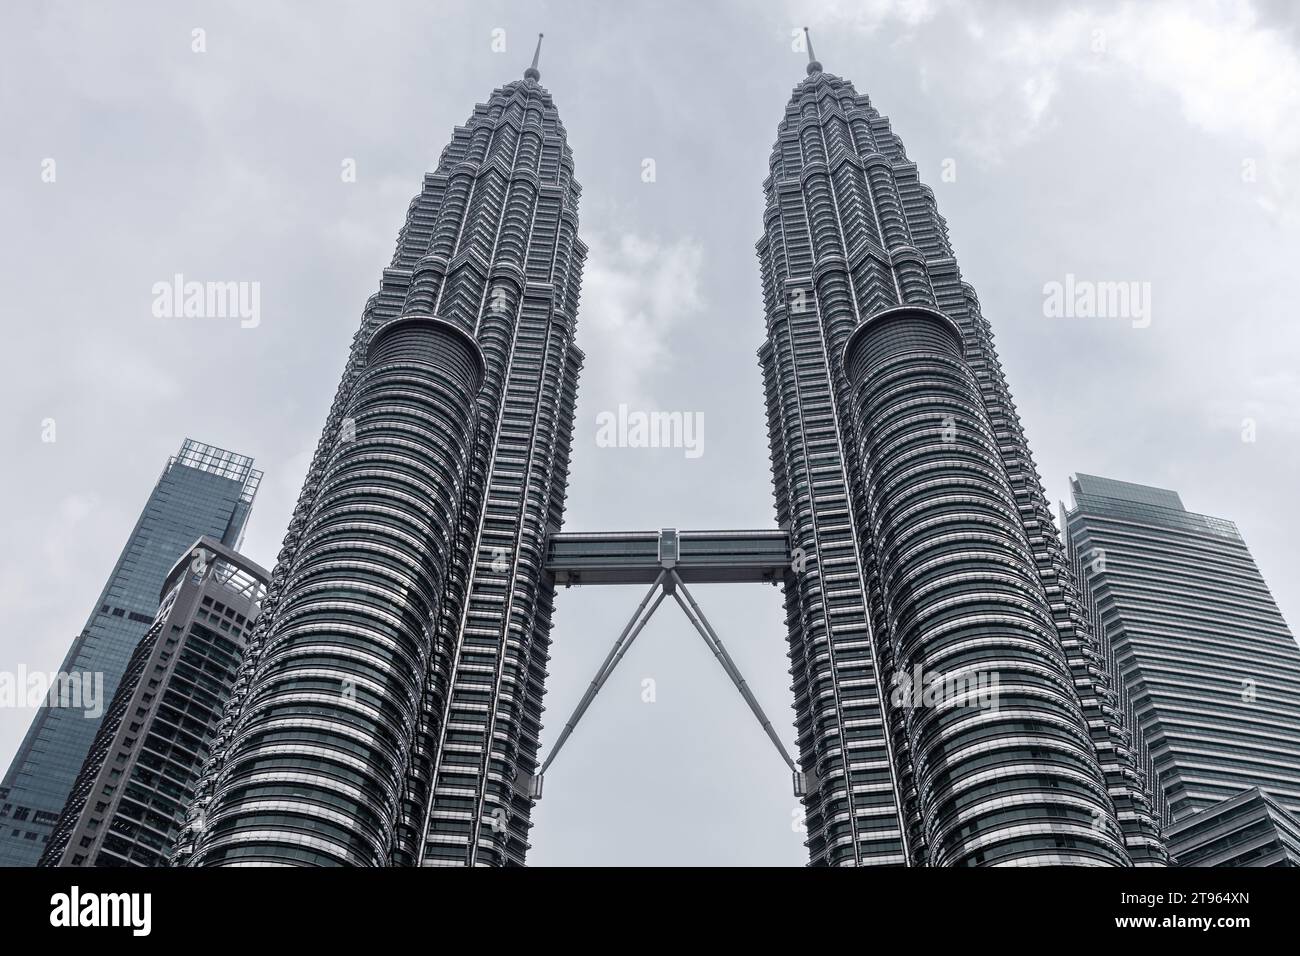 Kuala Lumpur, Malaisie - 25 novembre 2019 : extérieur des tours jumelles Petronas par temps nuageux Banque D'Images